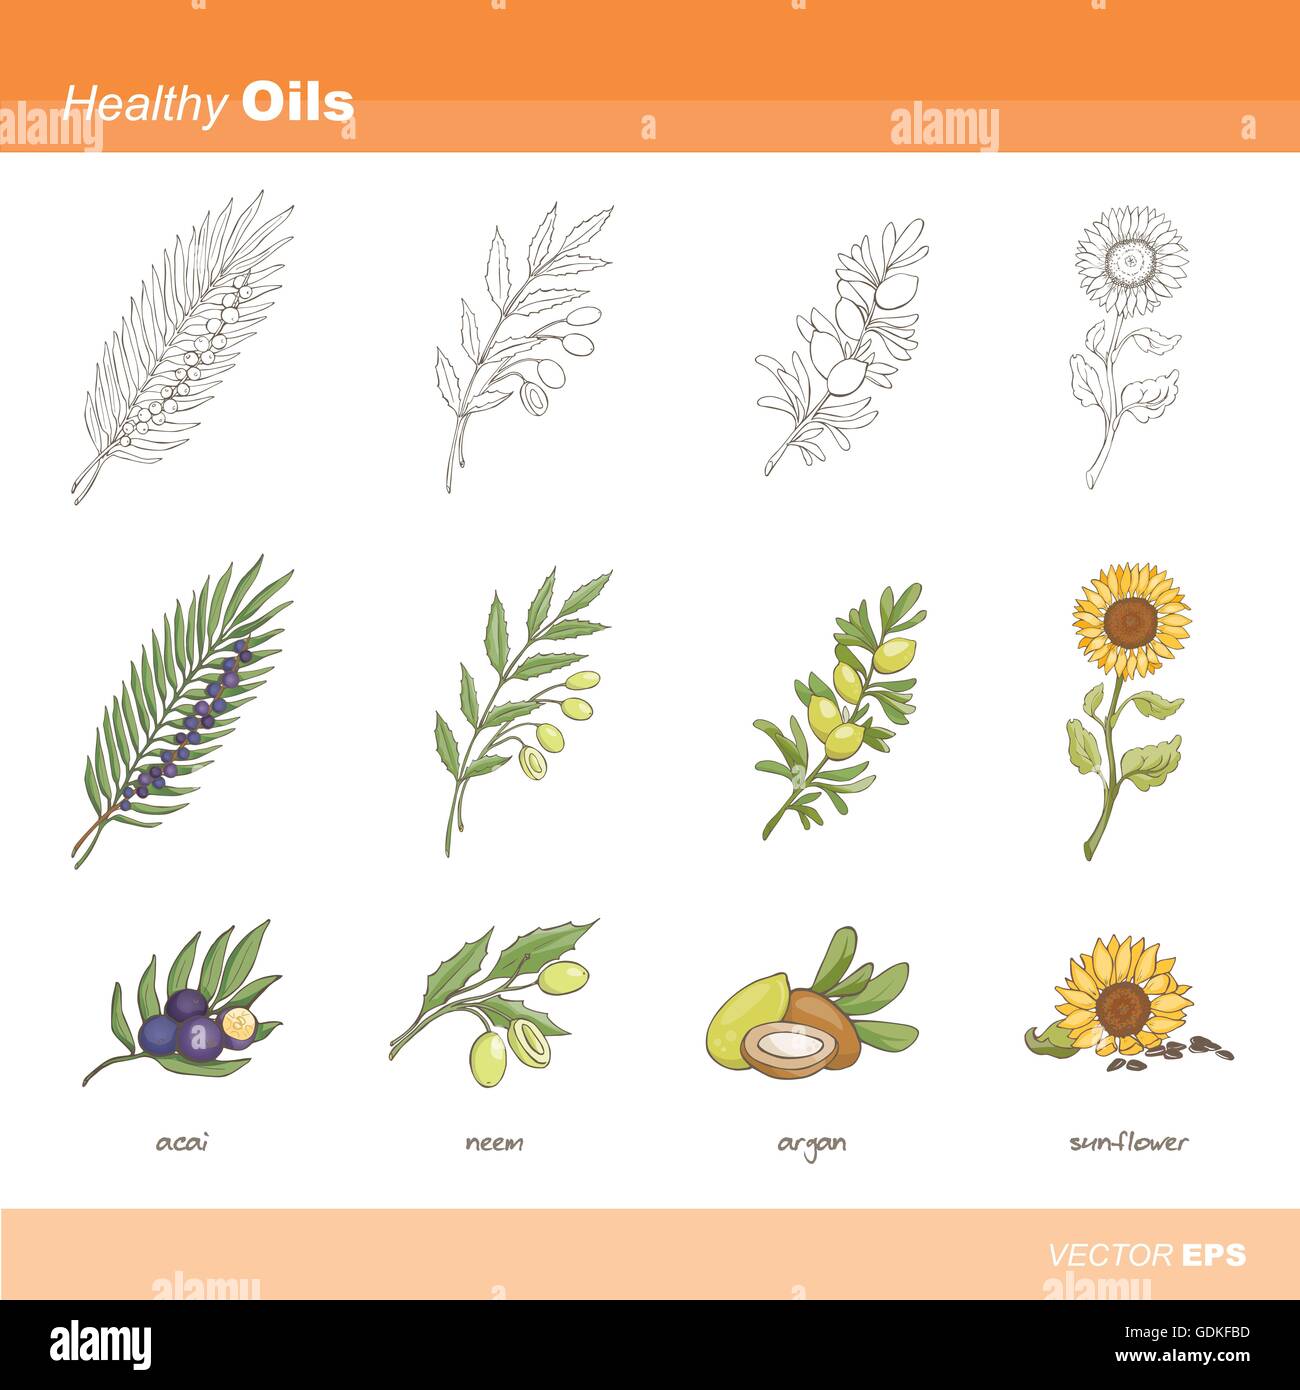 Healthy oils set: acai, neem, argan and sunflower Stock Vector